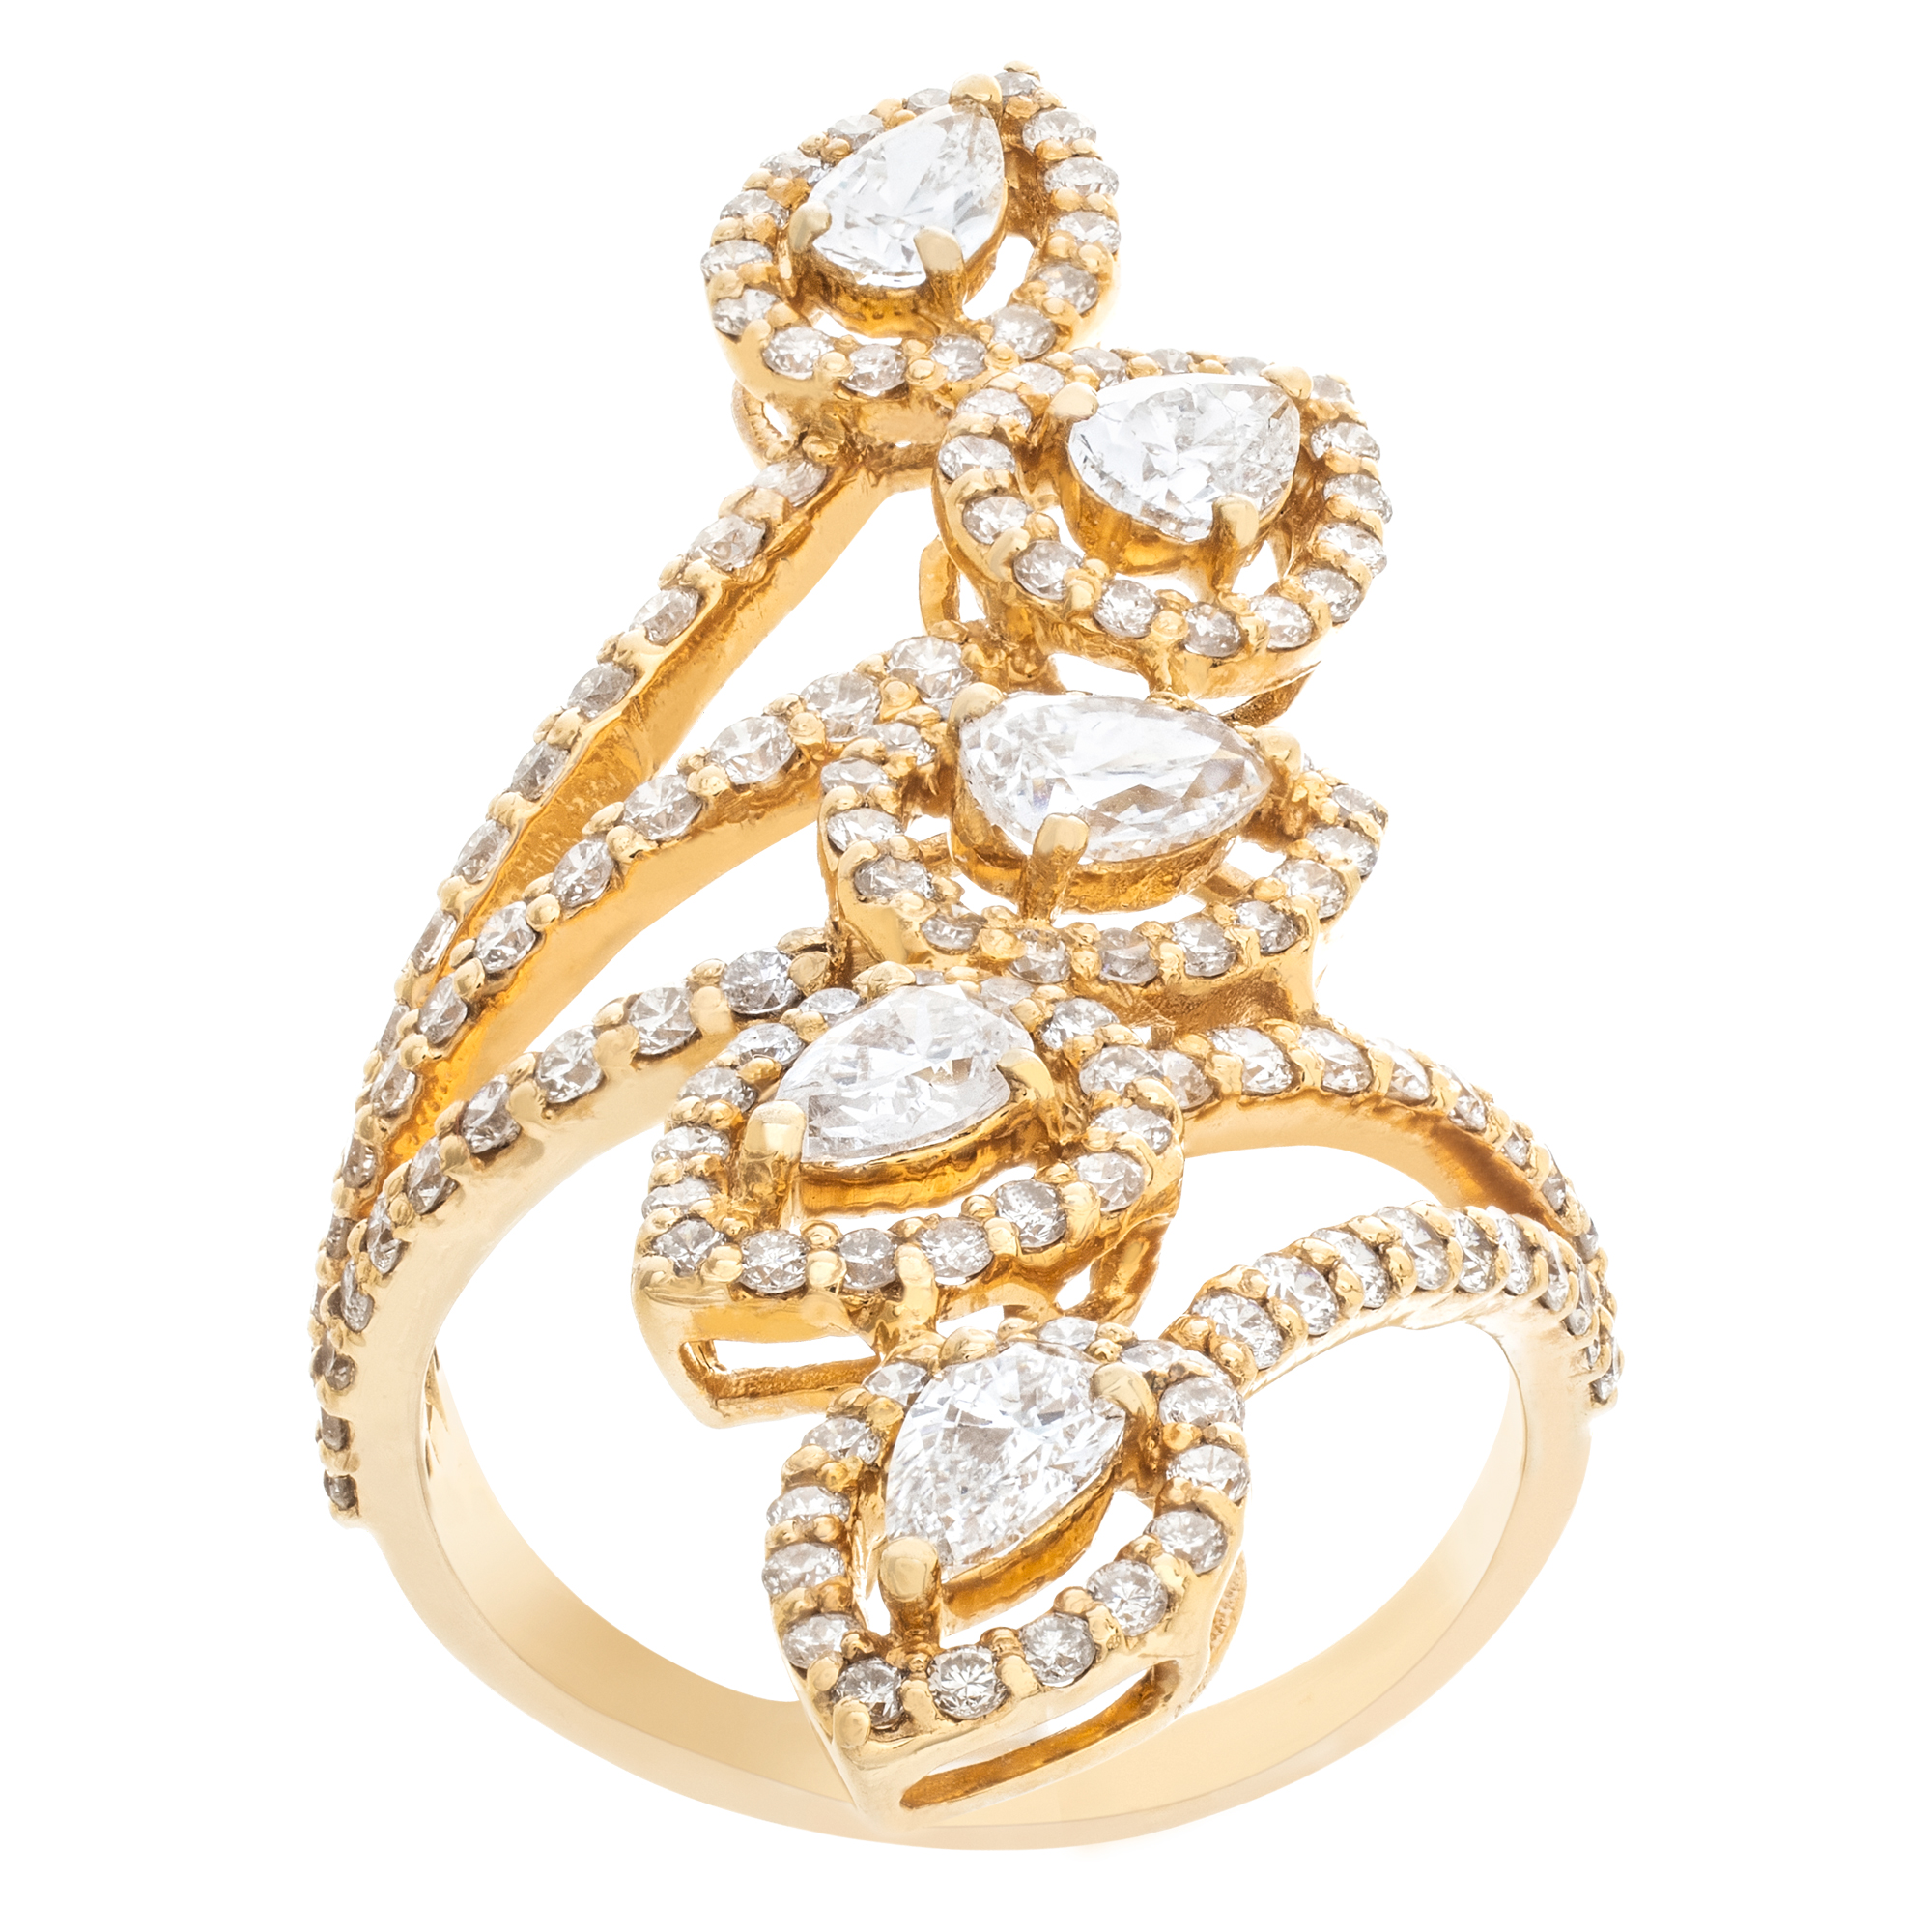 Leaf motif diamond ring set in 18k yellow gold